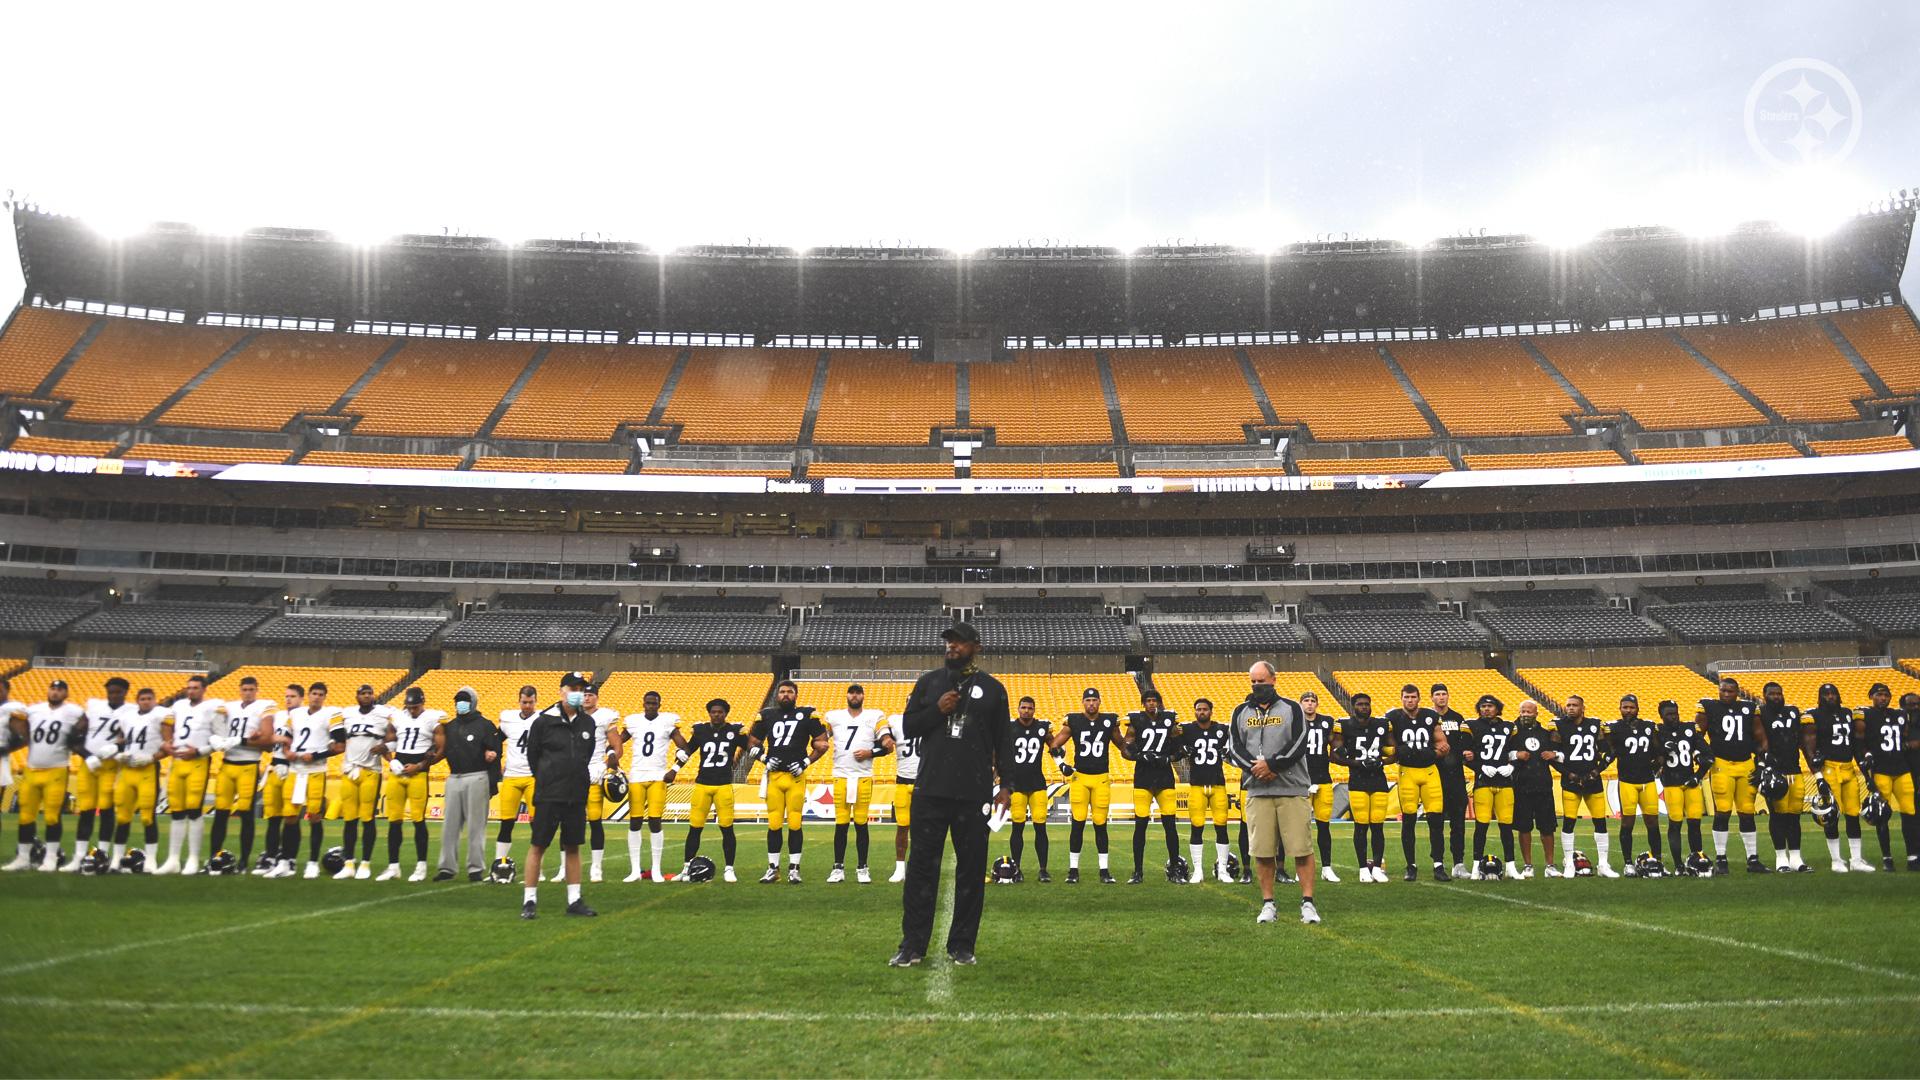 Giants kneel for anthem before season opener vs. Steelers